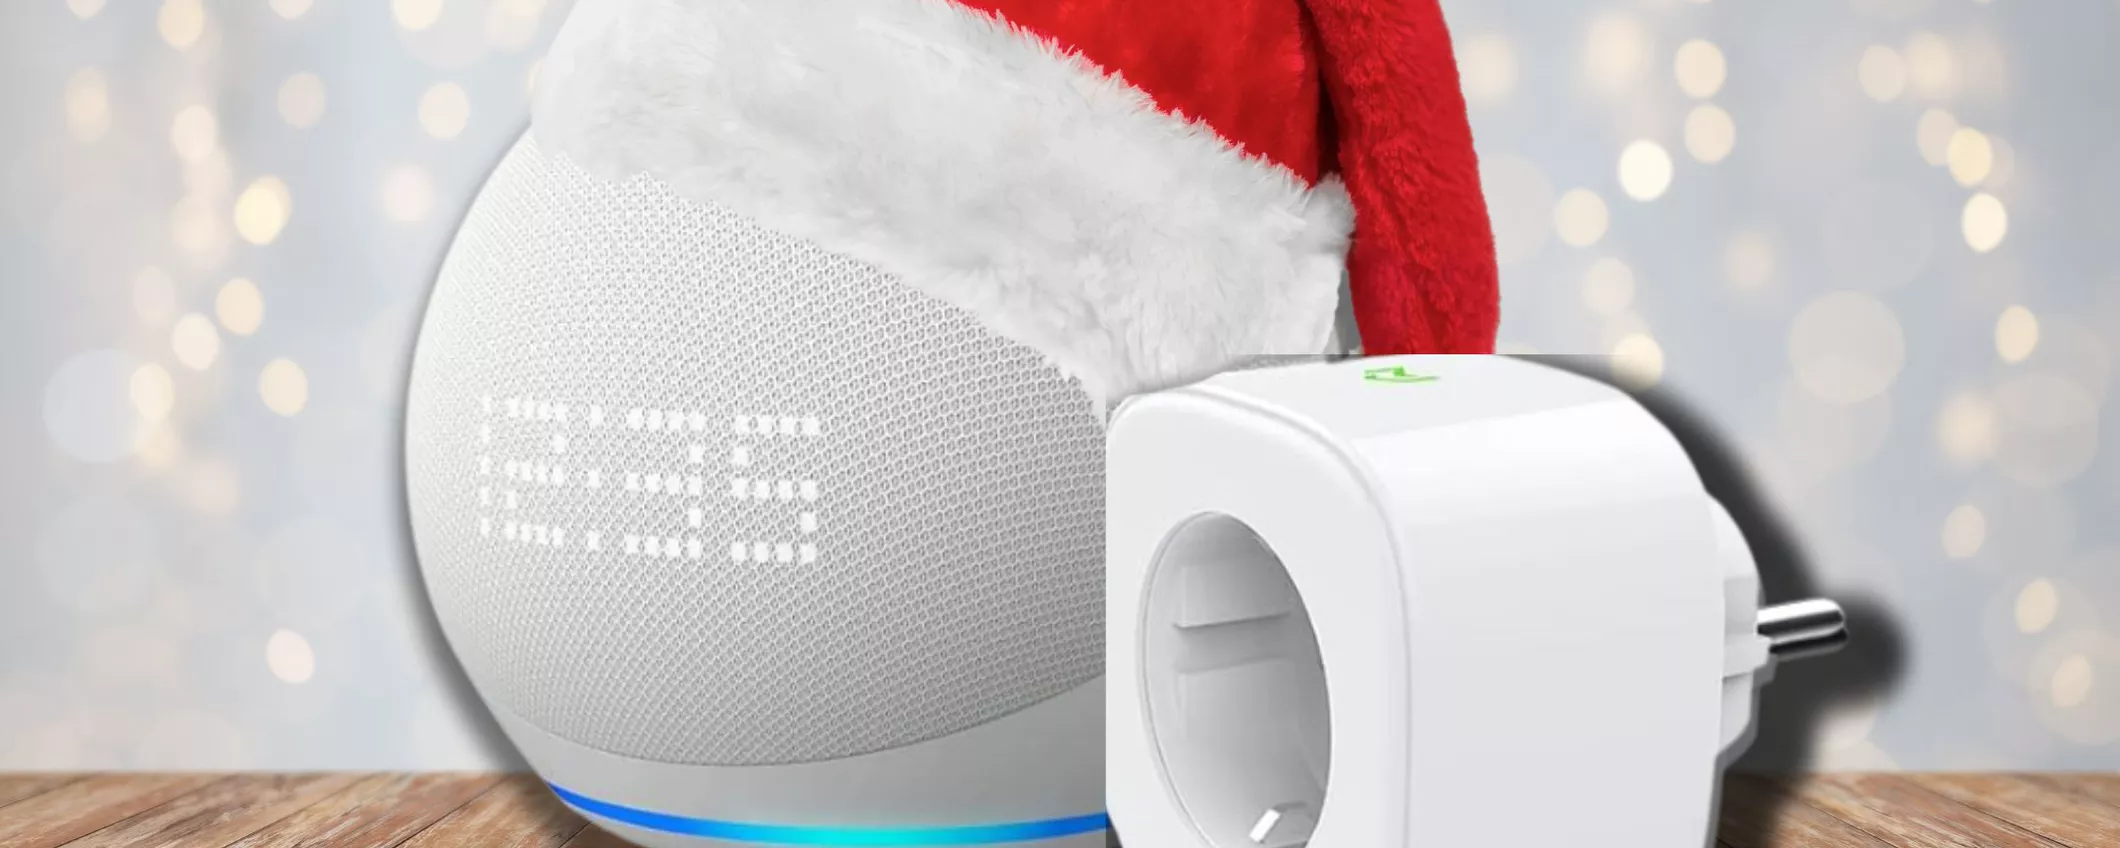 BUNDLE RISPARMIO: Echo Dot con Meross Smart Plug a prezzo OCCASIONE per Natale!